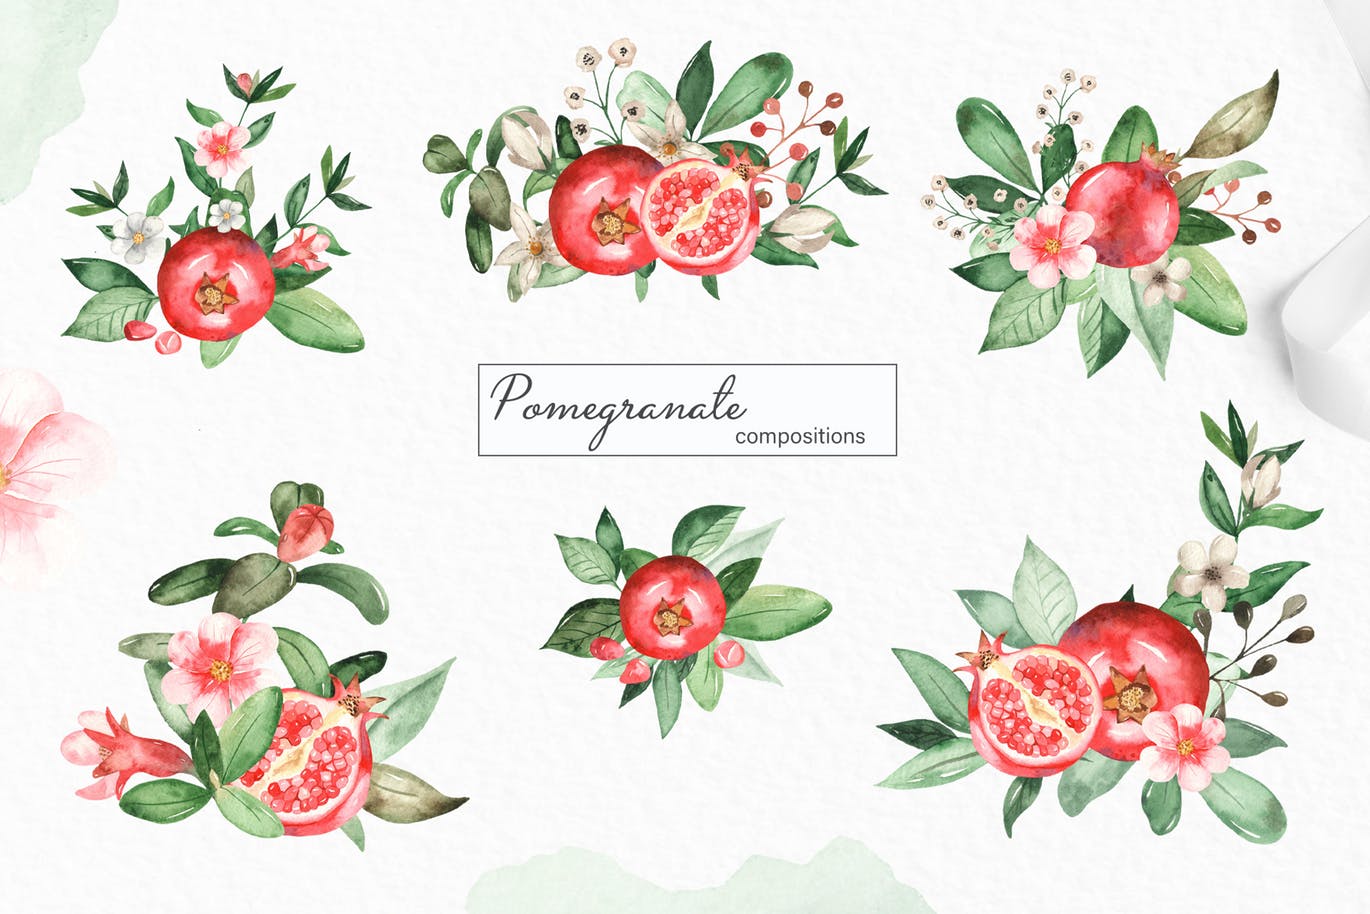 水彩石榴剪贴画/花框/花环第一素材精选设计素材 Watercolor pomegranate. Clipart, frames, wreaths插图(1)